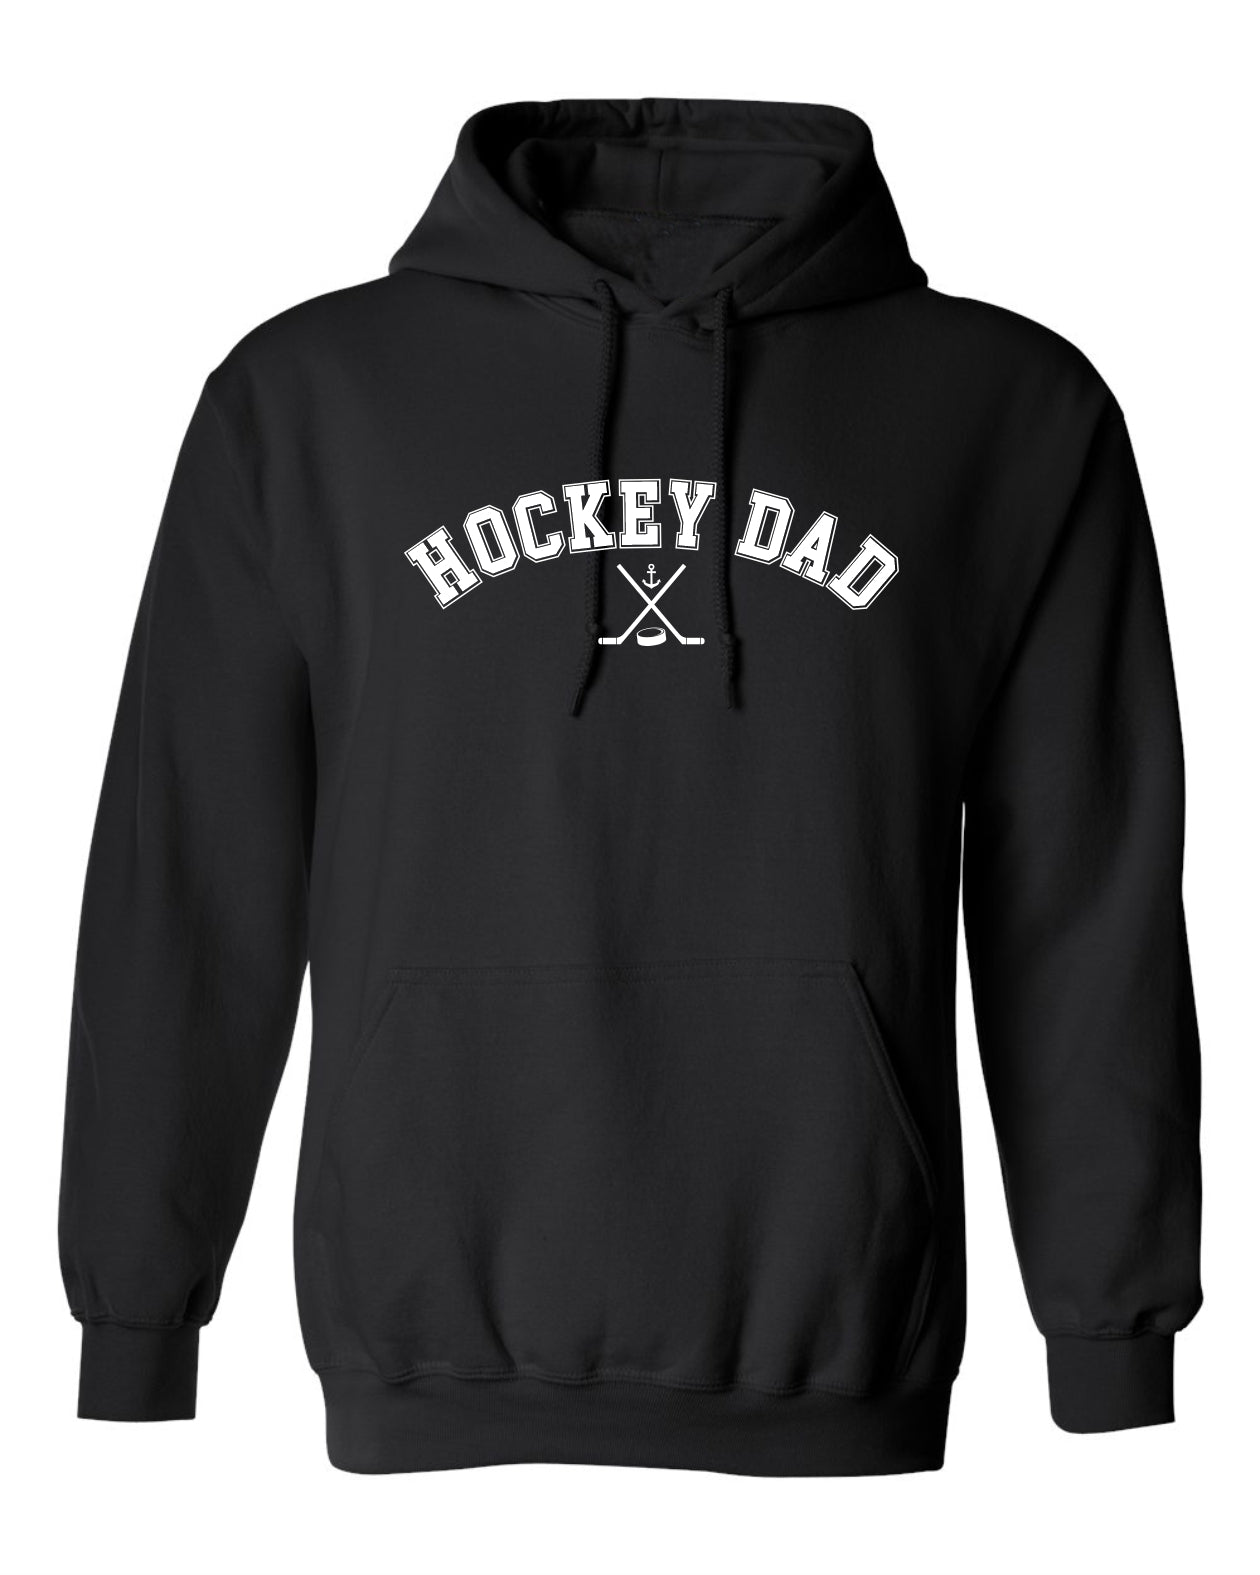 "Hockey Dad" Unisex Hoodie